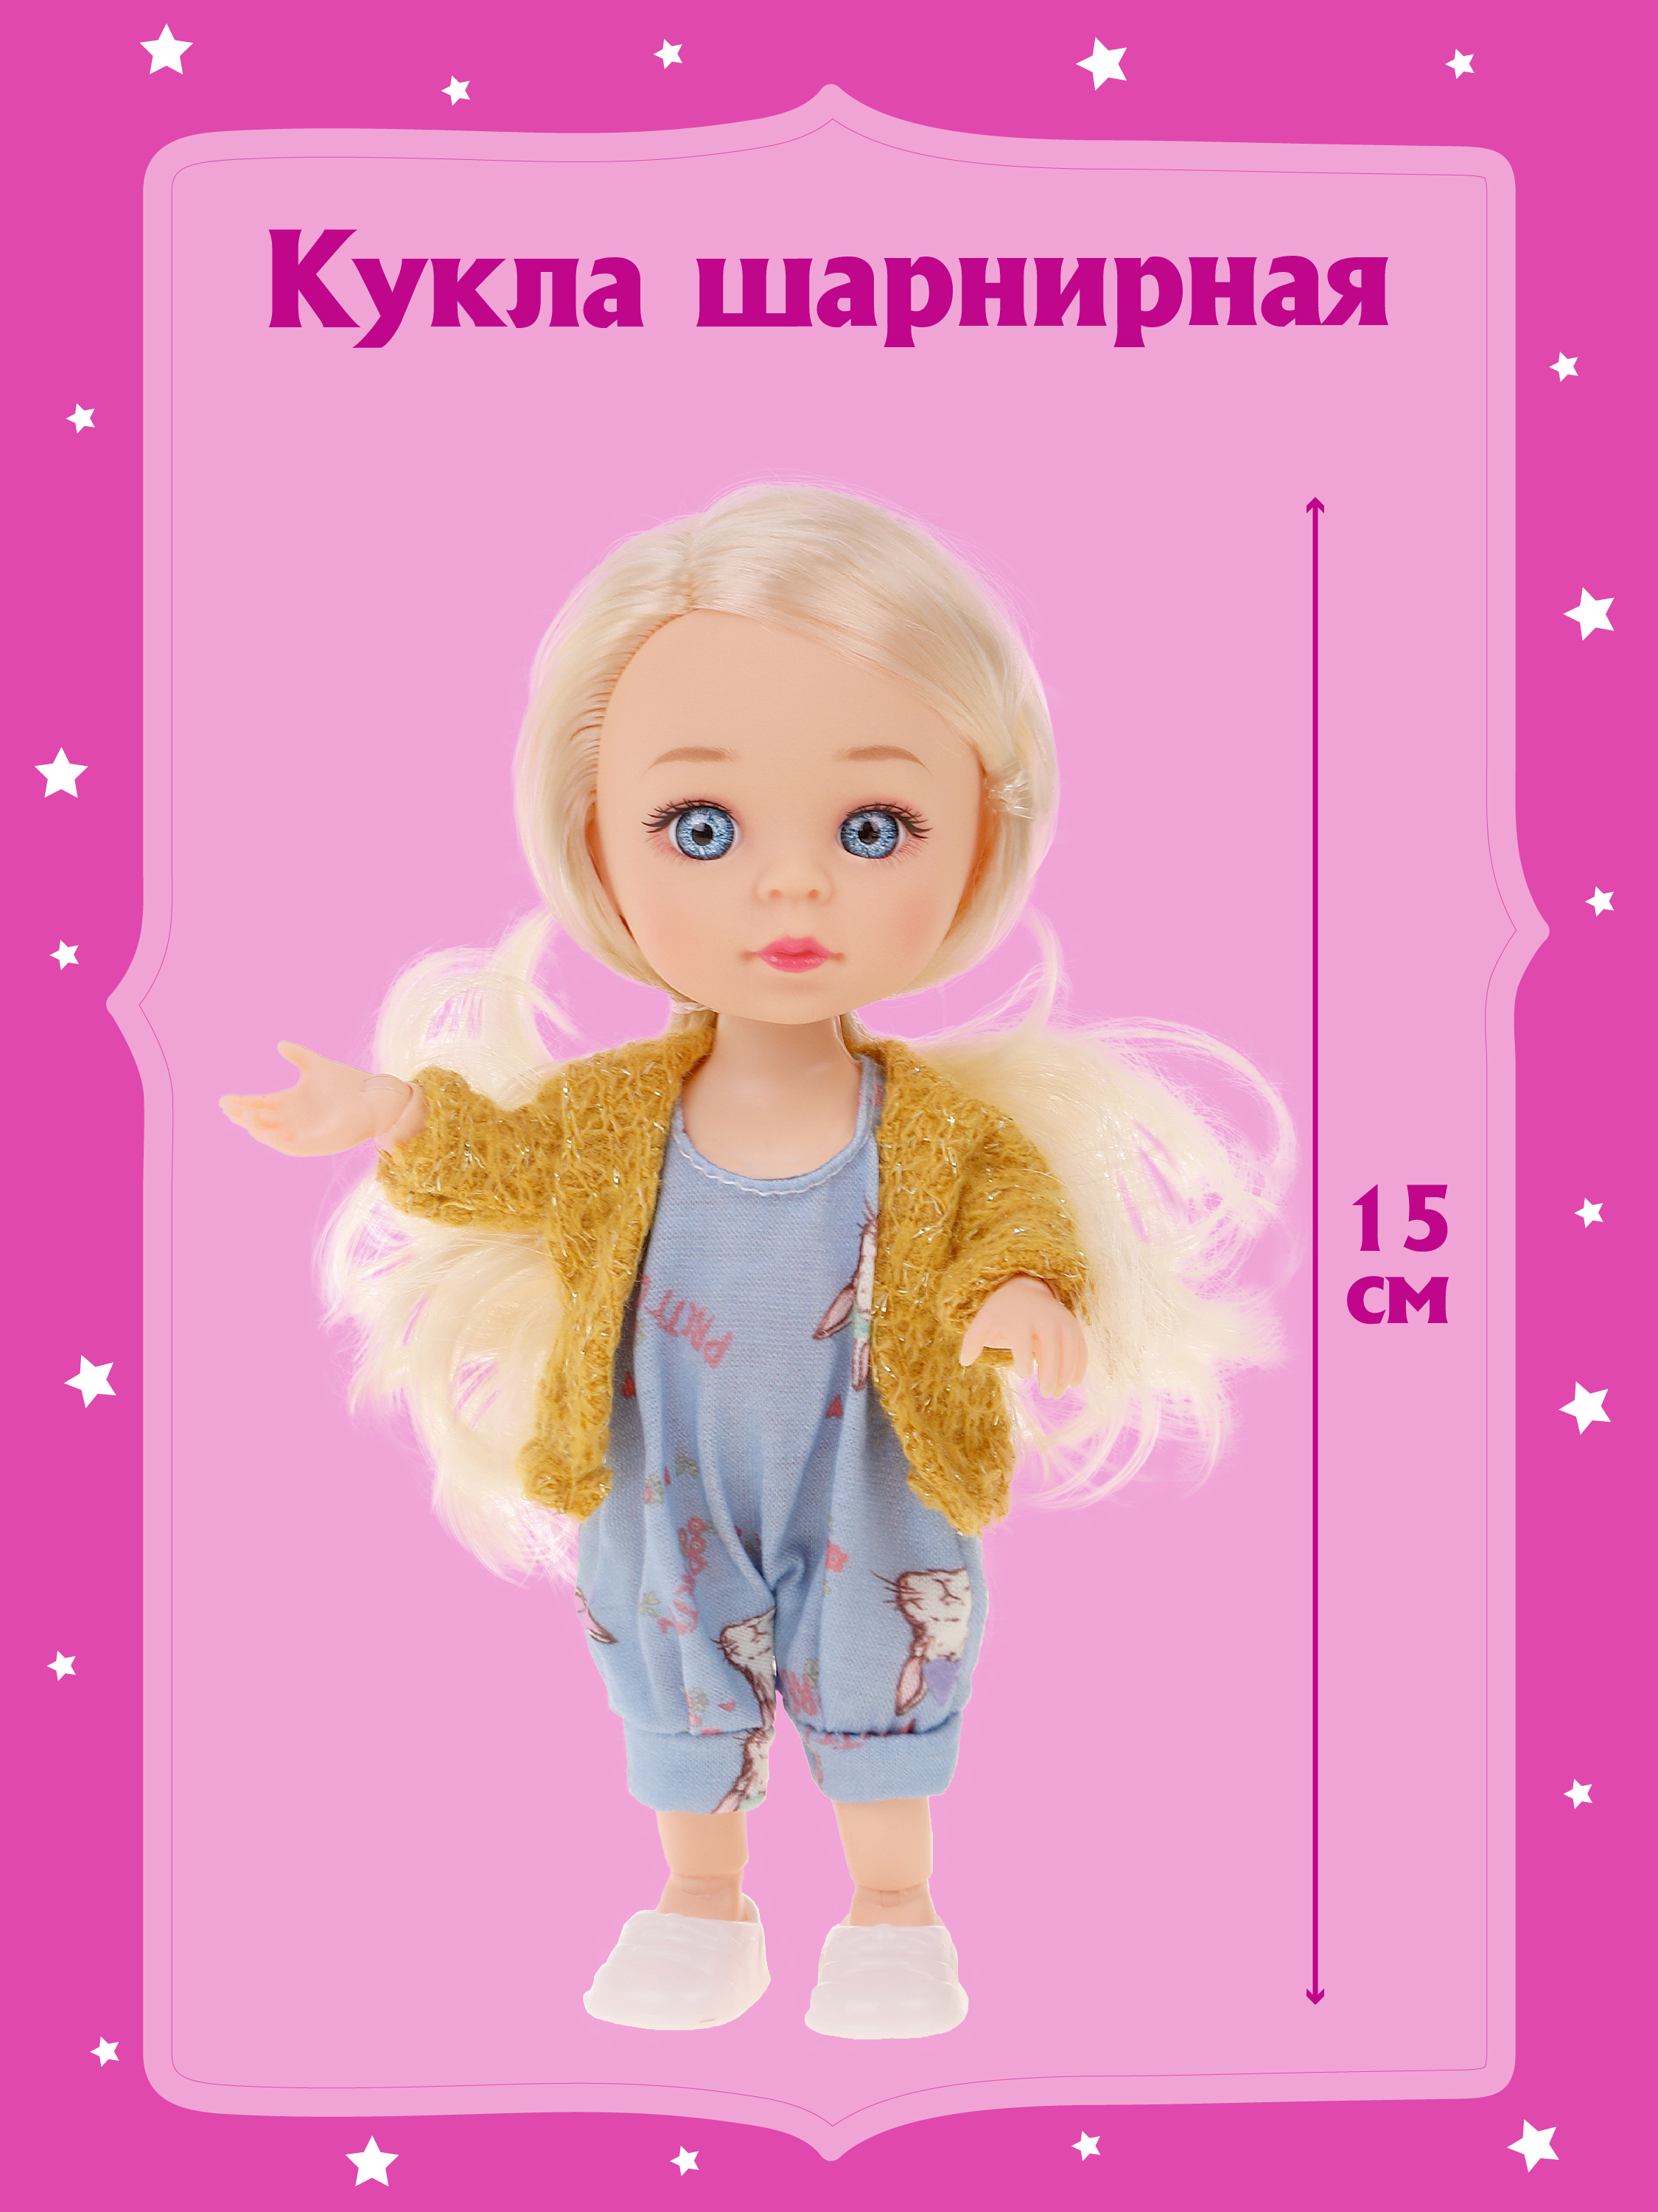 Шарнирная кукла для девочки Наша игрушка 15 см, 803599